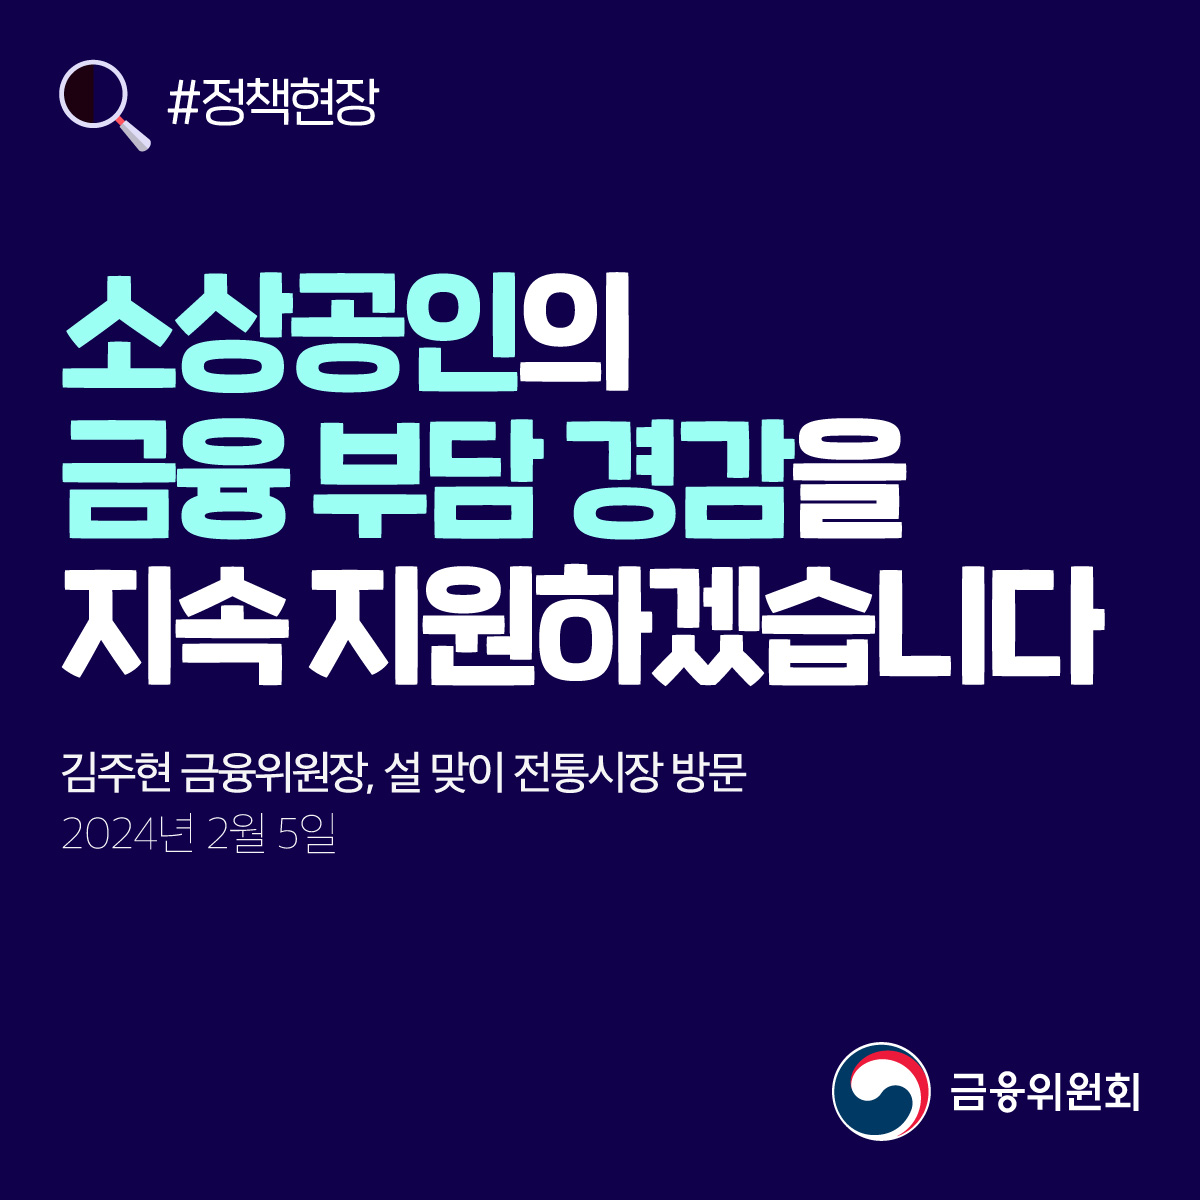 소상공인의 금융 부담 경감을 지속 지원하겠습니다. 김주현 금융위원장, 설 맞이 전통시장 방문. 2024년 2월 5일